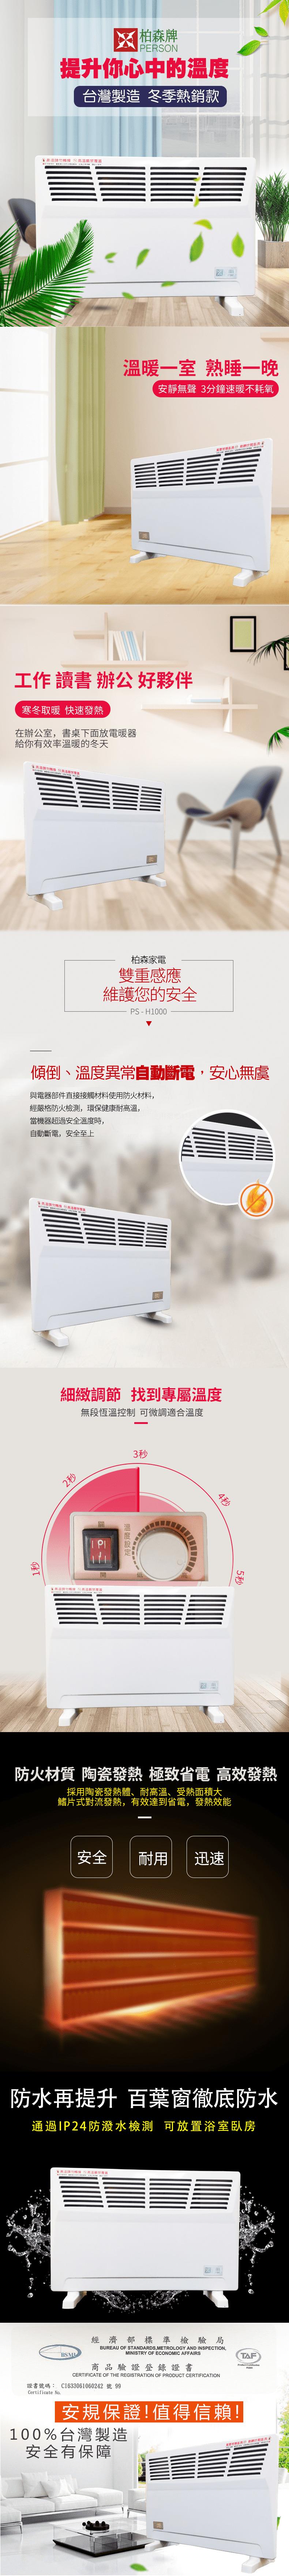 【柏森牌】鰭片式熱對流電暖器 PS-H1000